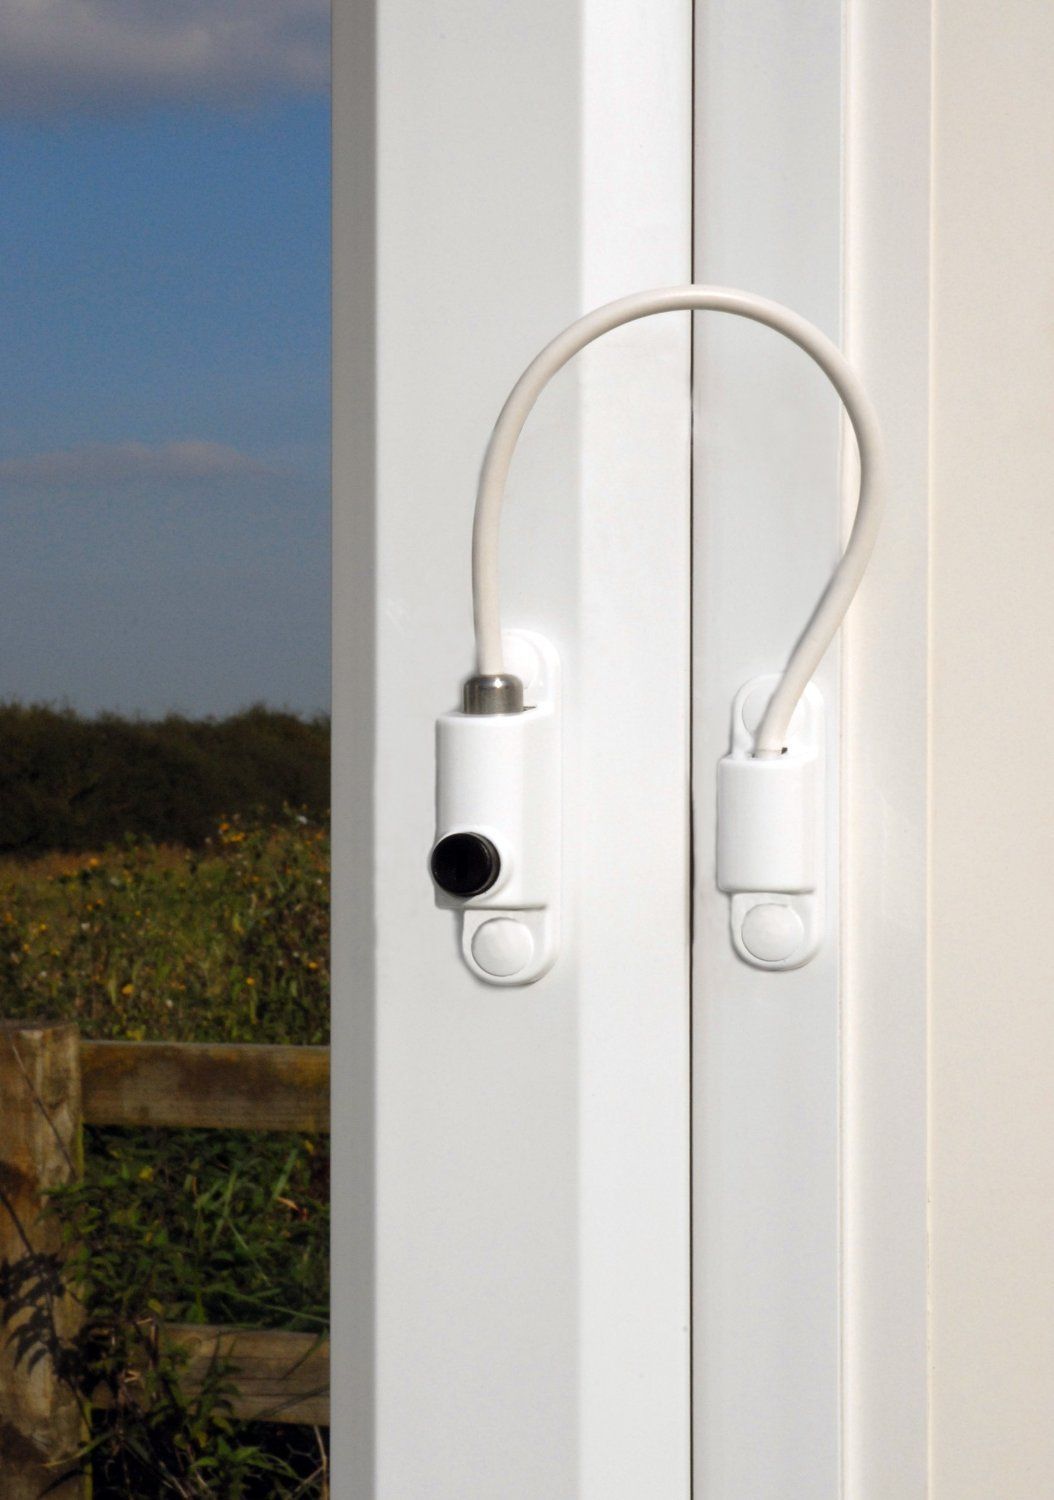 Fenstersicherung 8 Packs Sicherheitskabel für Kindersicherung Fensterverschlüsse Türverschlüsse mit Schrauben Schlüssel Weiß 